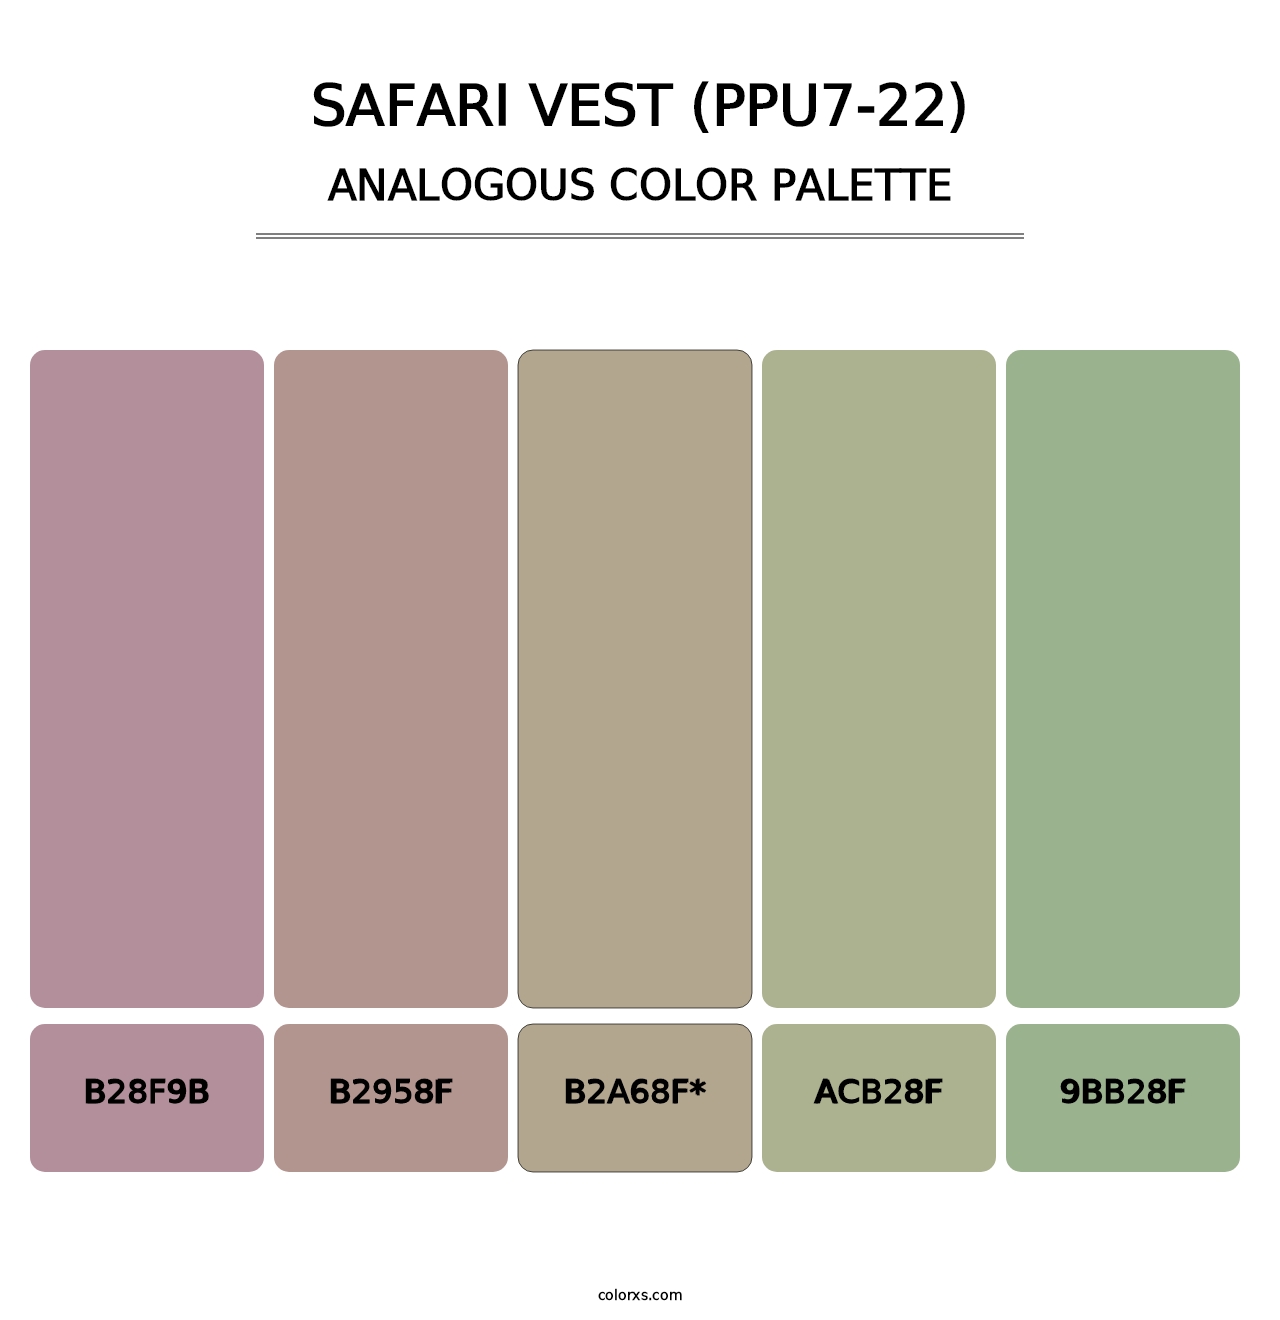 Safari Vest (PPU7-22) - Analogous Color Palette